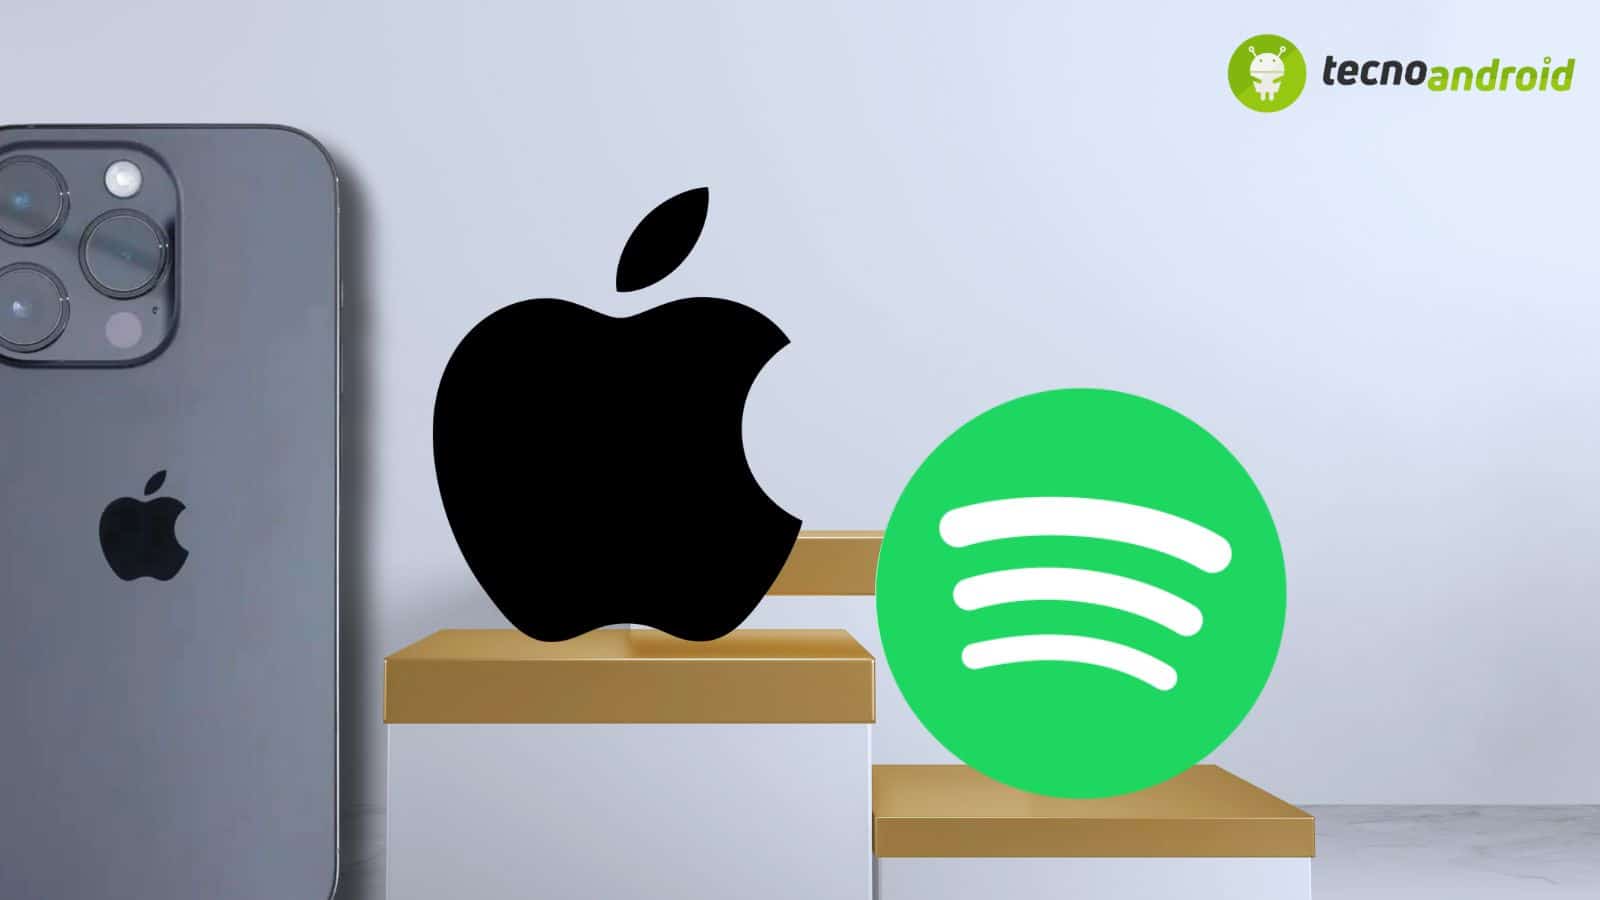 Gli utenti Apple preferiscono l'app Music a Spotify